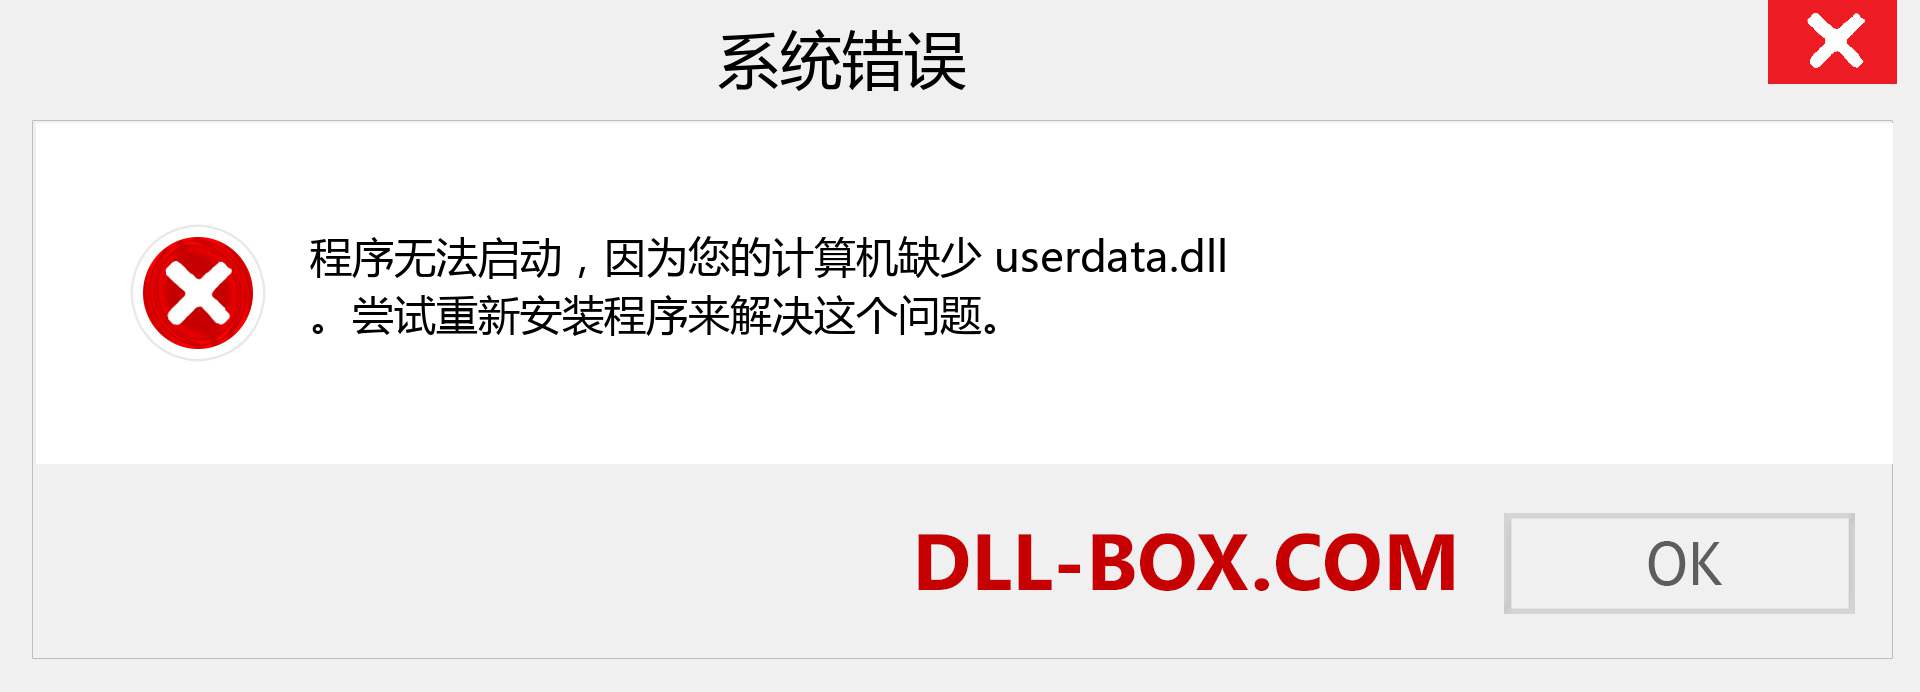 userdata.dll 文件丢失？。 适用于 Windows 7、8、10 的下载 - 修复 Windows、照片、图像上的 userdata dll 丢失错误